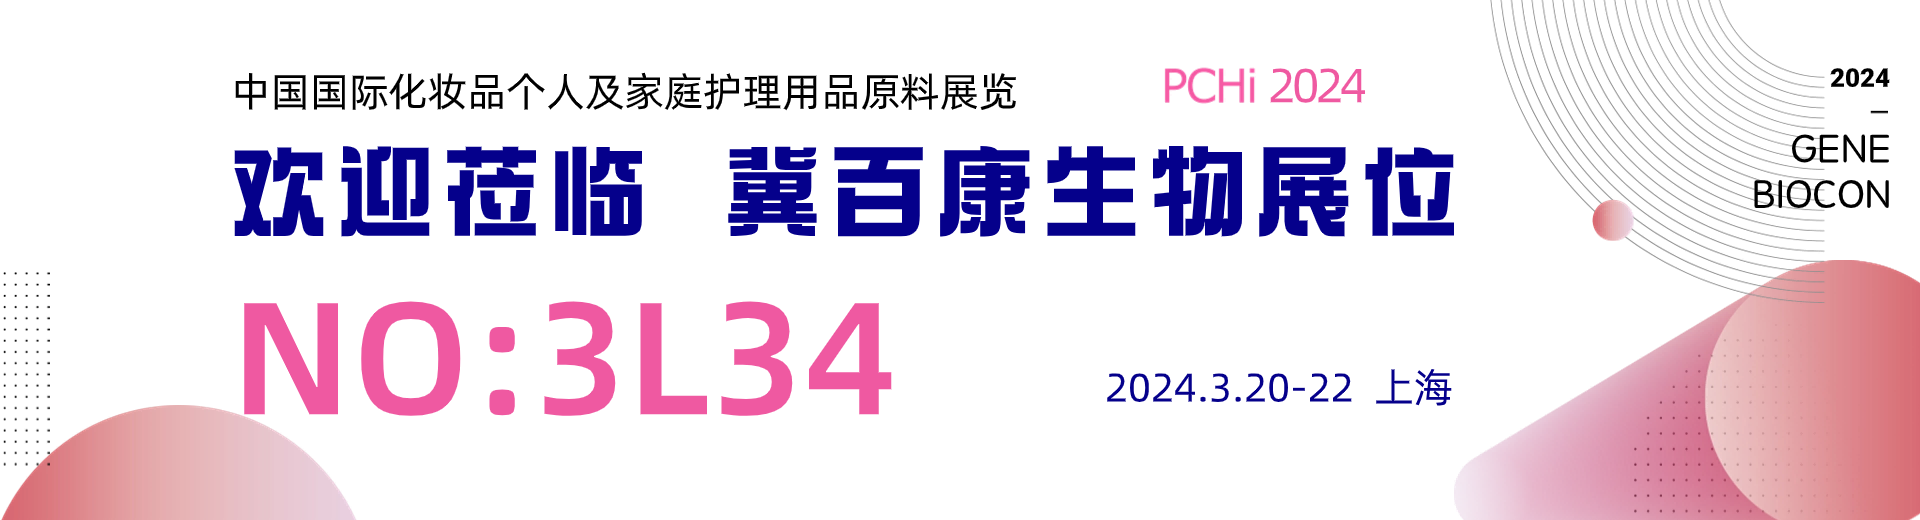 PCHi 2024